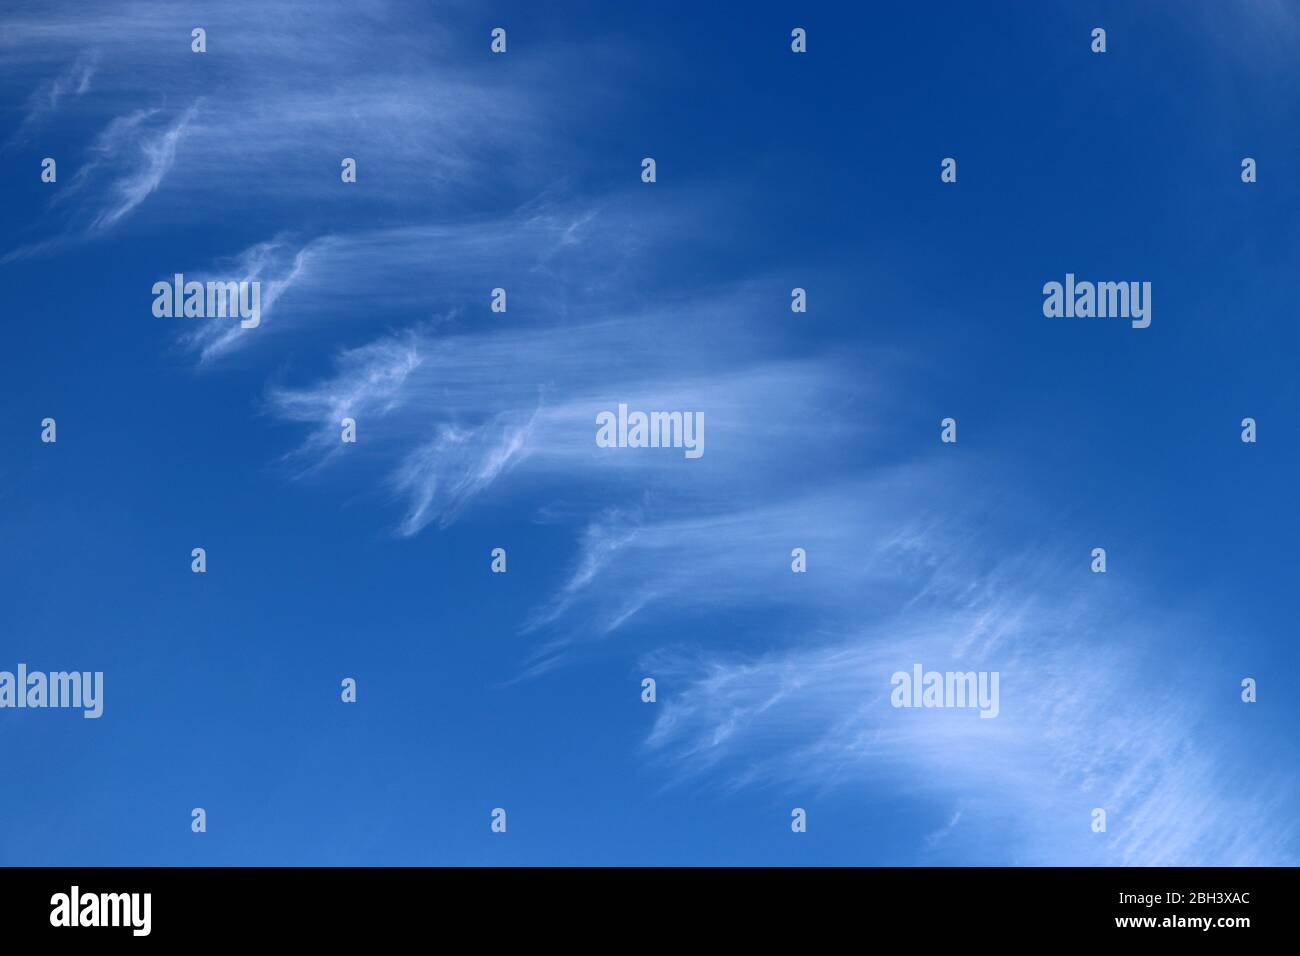 Ciel bleu recouvert de nuages de cirrus blancs. Paysage de printemps, beau milieu météorologique, motif abstrait Banque D'Images